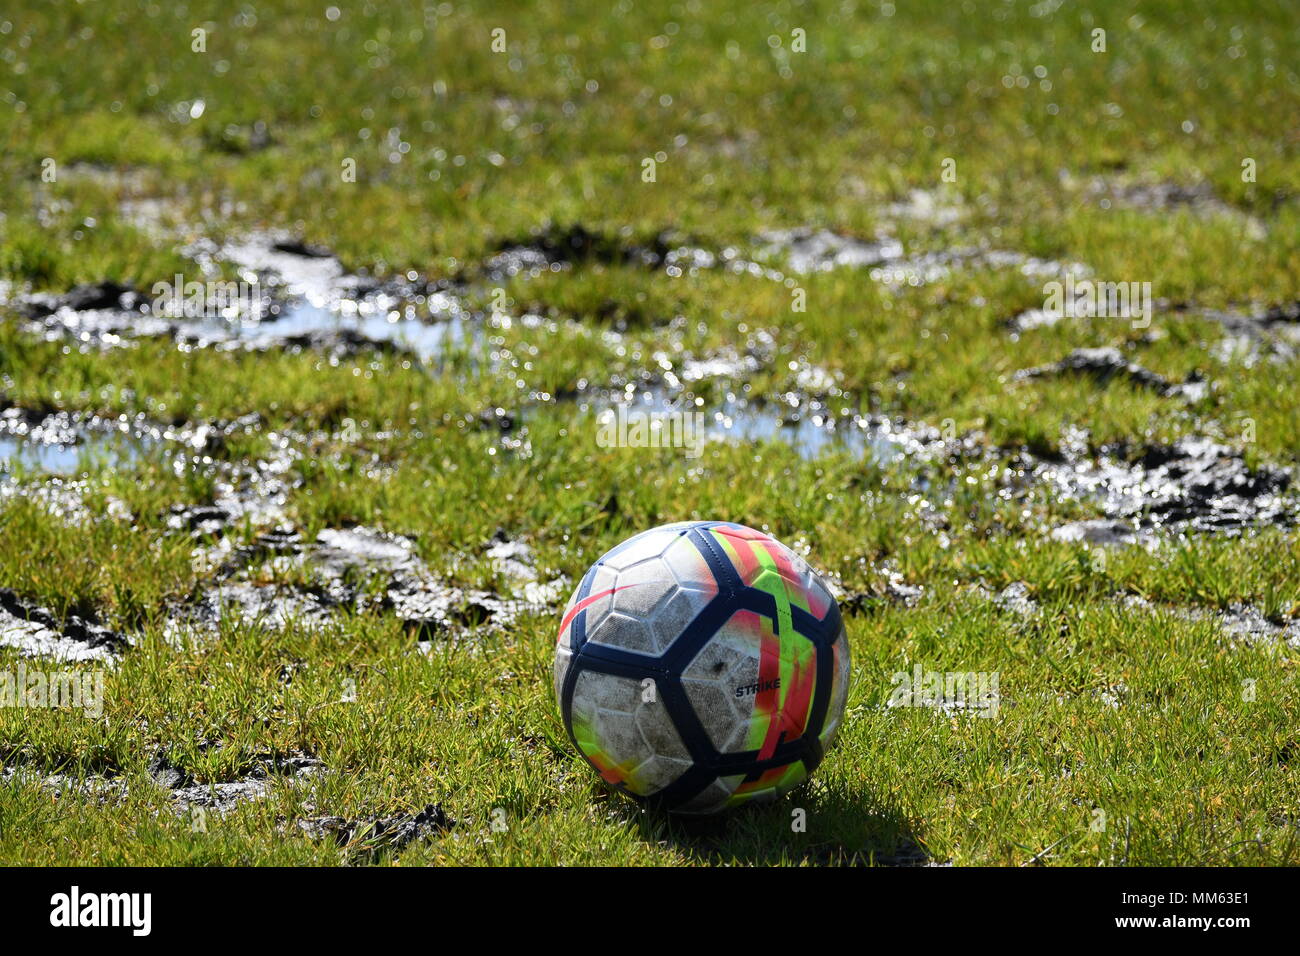 Waterlogged football pitch Stock Photo